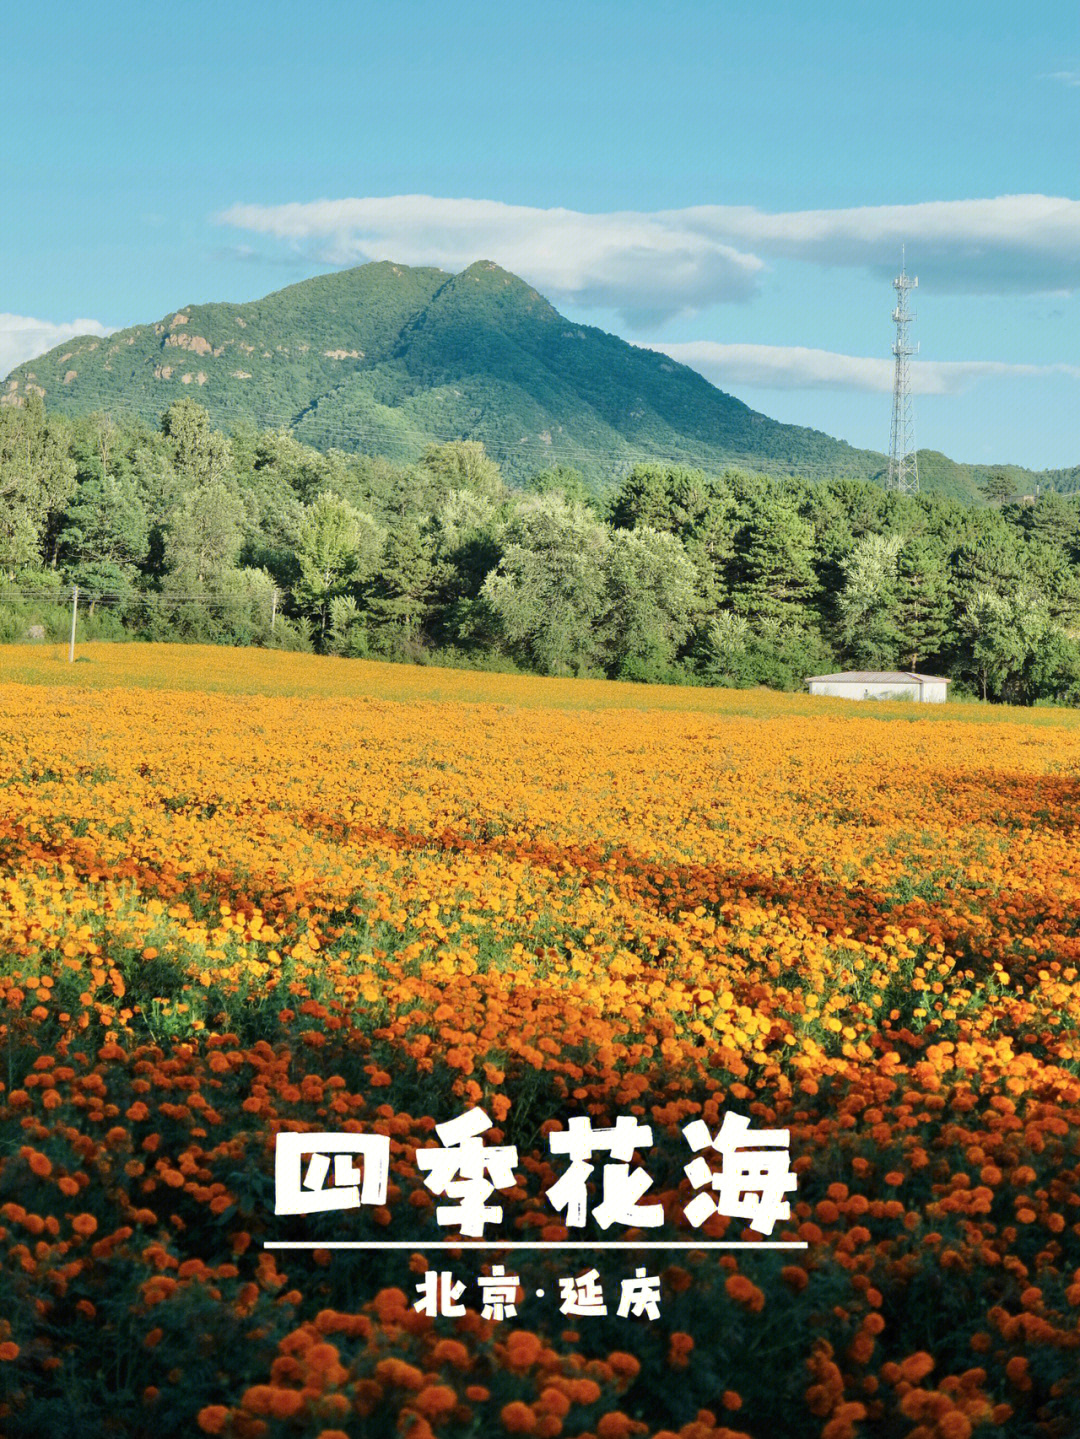 91北京延庆四季花海已是繁华盛开,目测应该至少有5种花,每种花都是